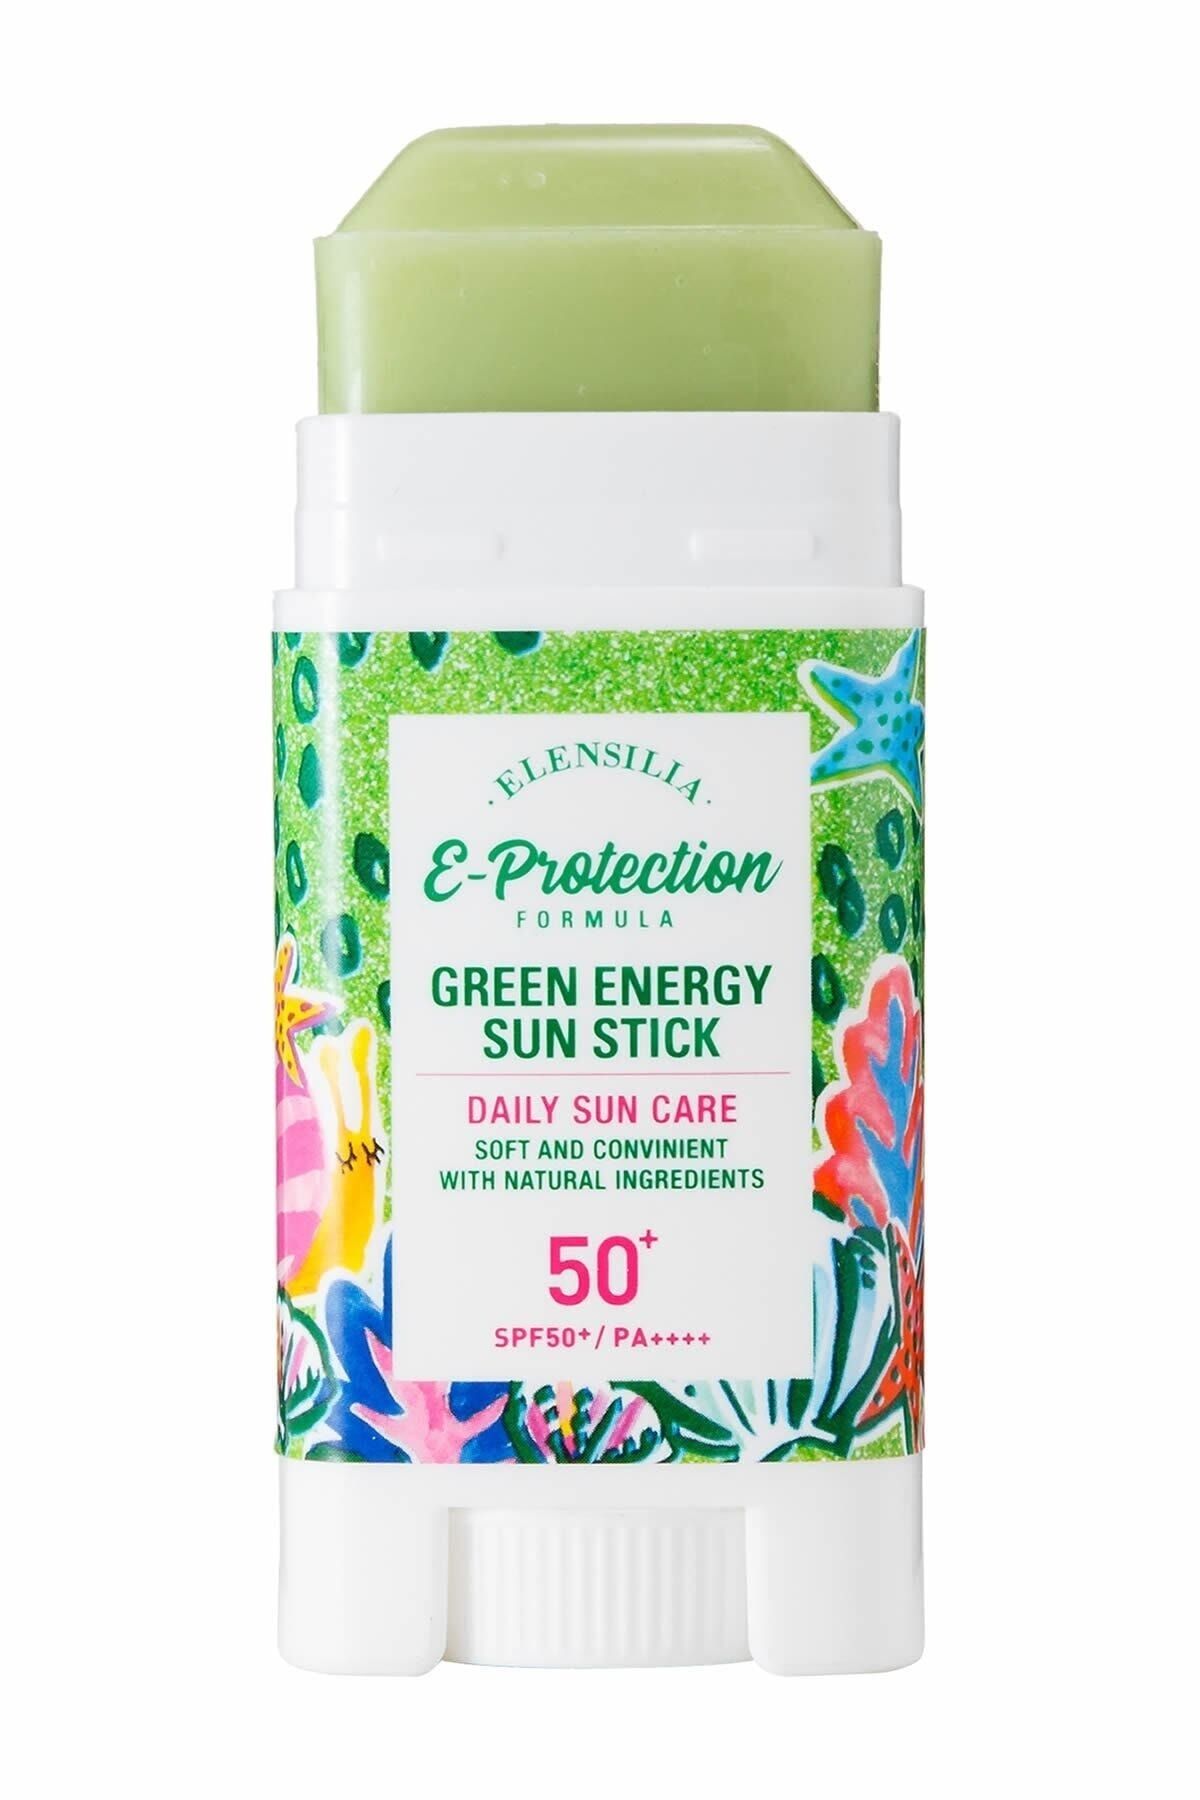 ELENSILIA Makyaj Üzerine Uygulanabilen Stick Güneş Kremi Spf 50+ Pa++++ Green Energy Sun Stick